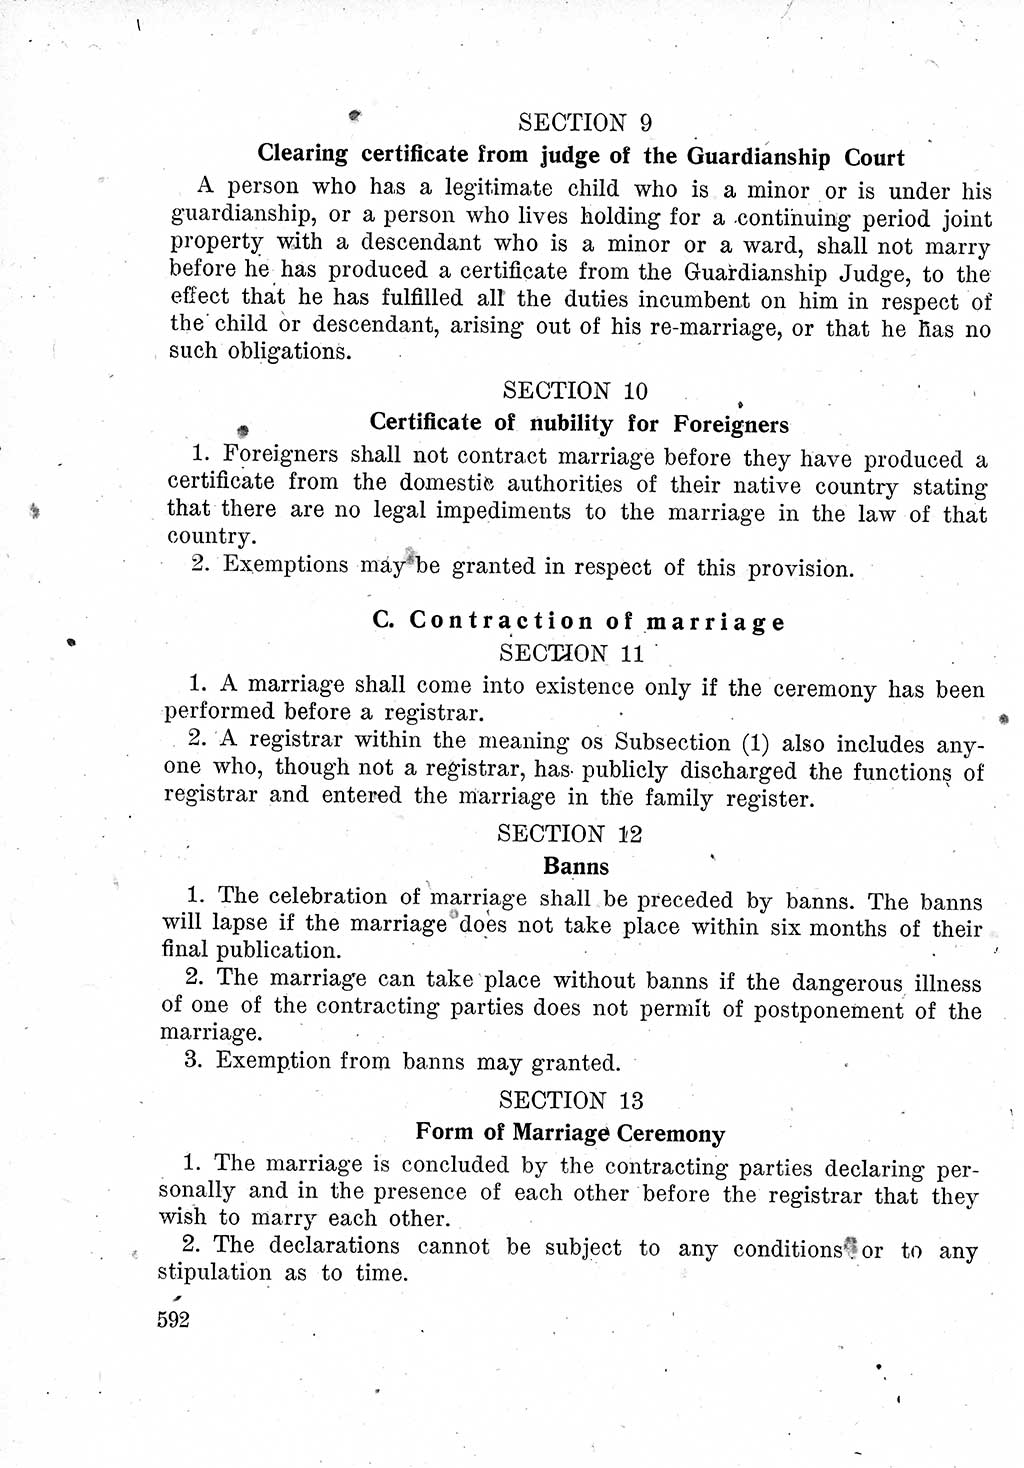 Das Recht der Besatzungsmacht (Deutschland), Proklamationen, Deklerationen, Verordnungen, Gesetze und Bekanntmachungen 1947, Seite 592 (R. Bes. Dtl. 1947, S. 592)